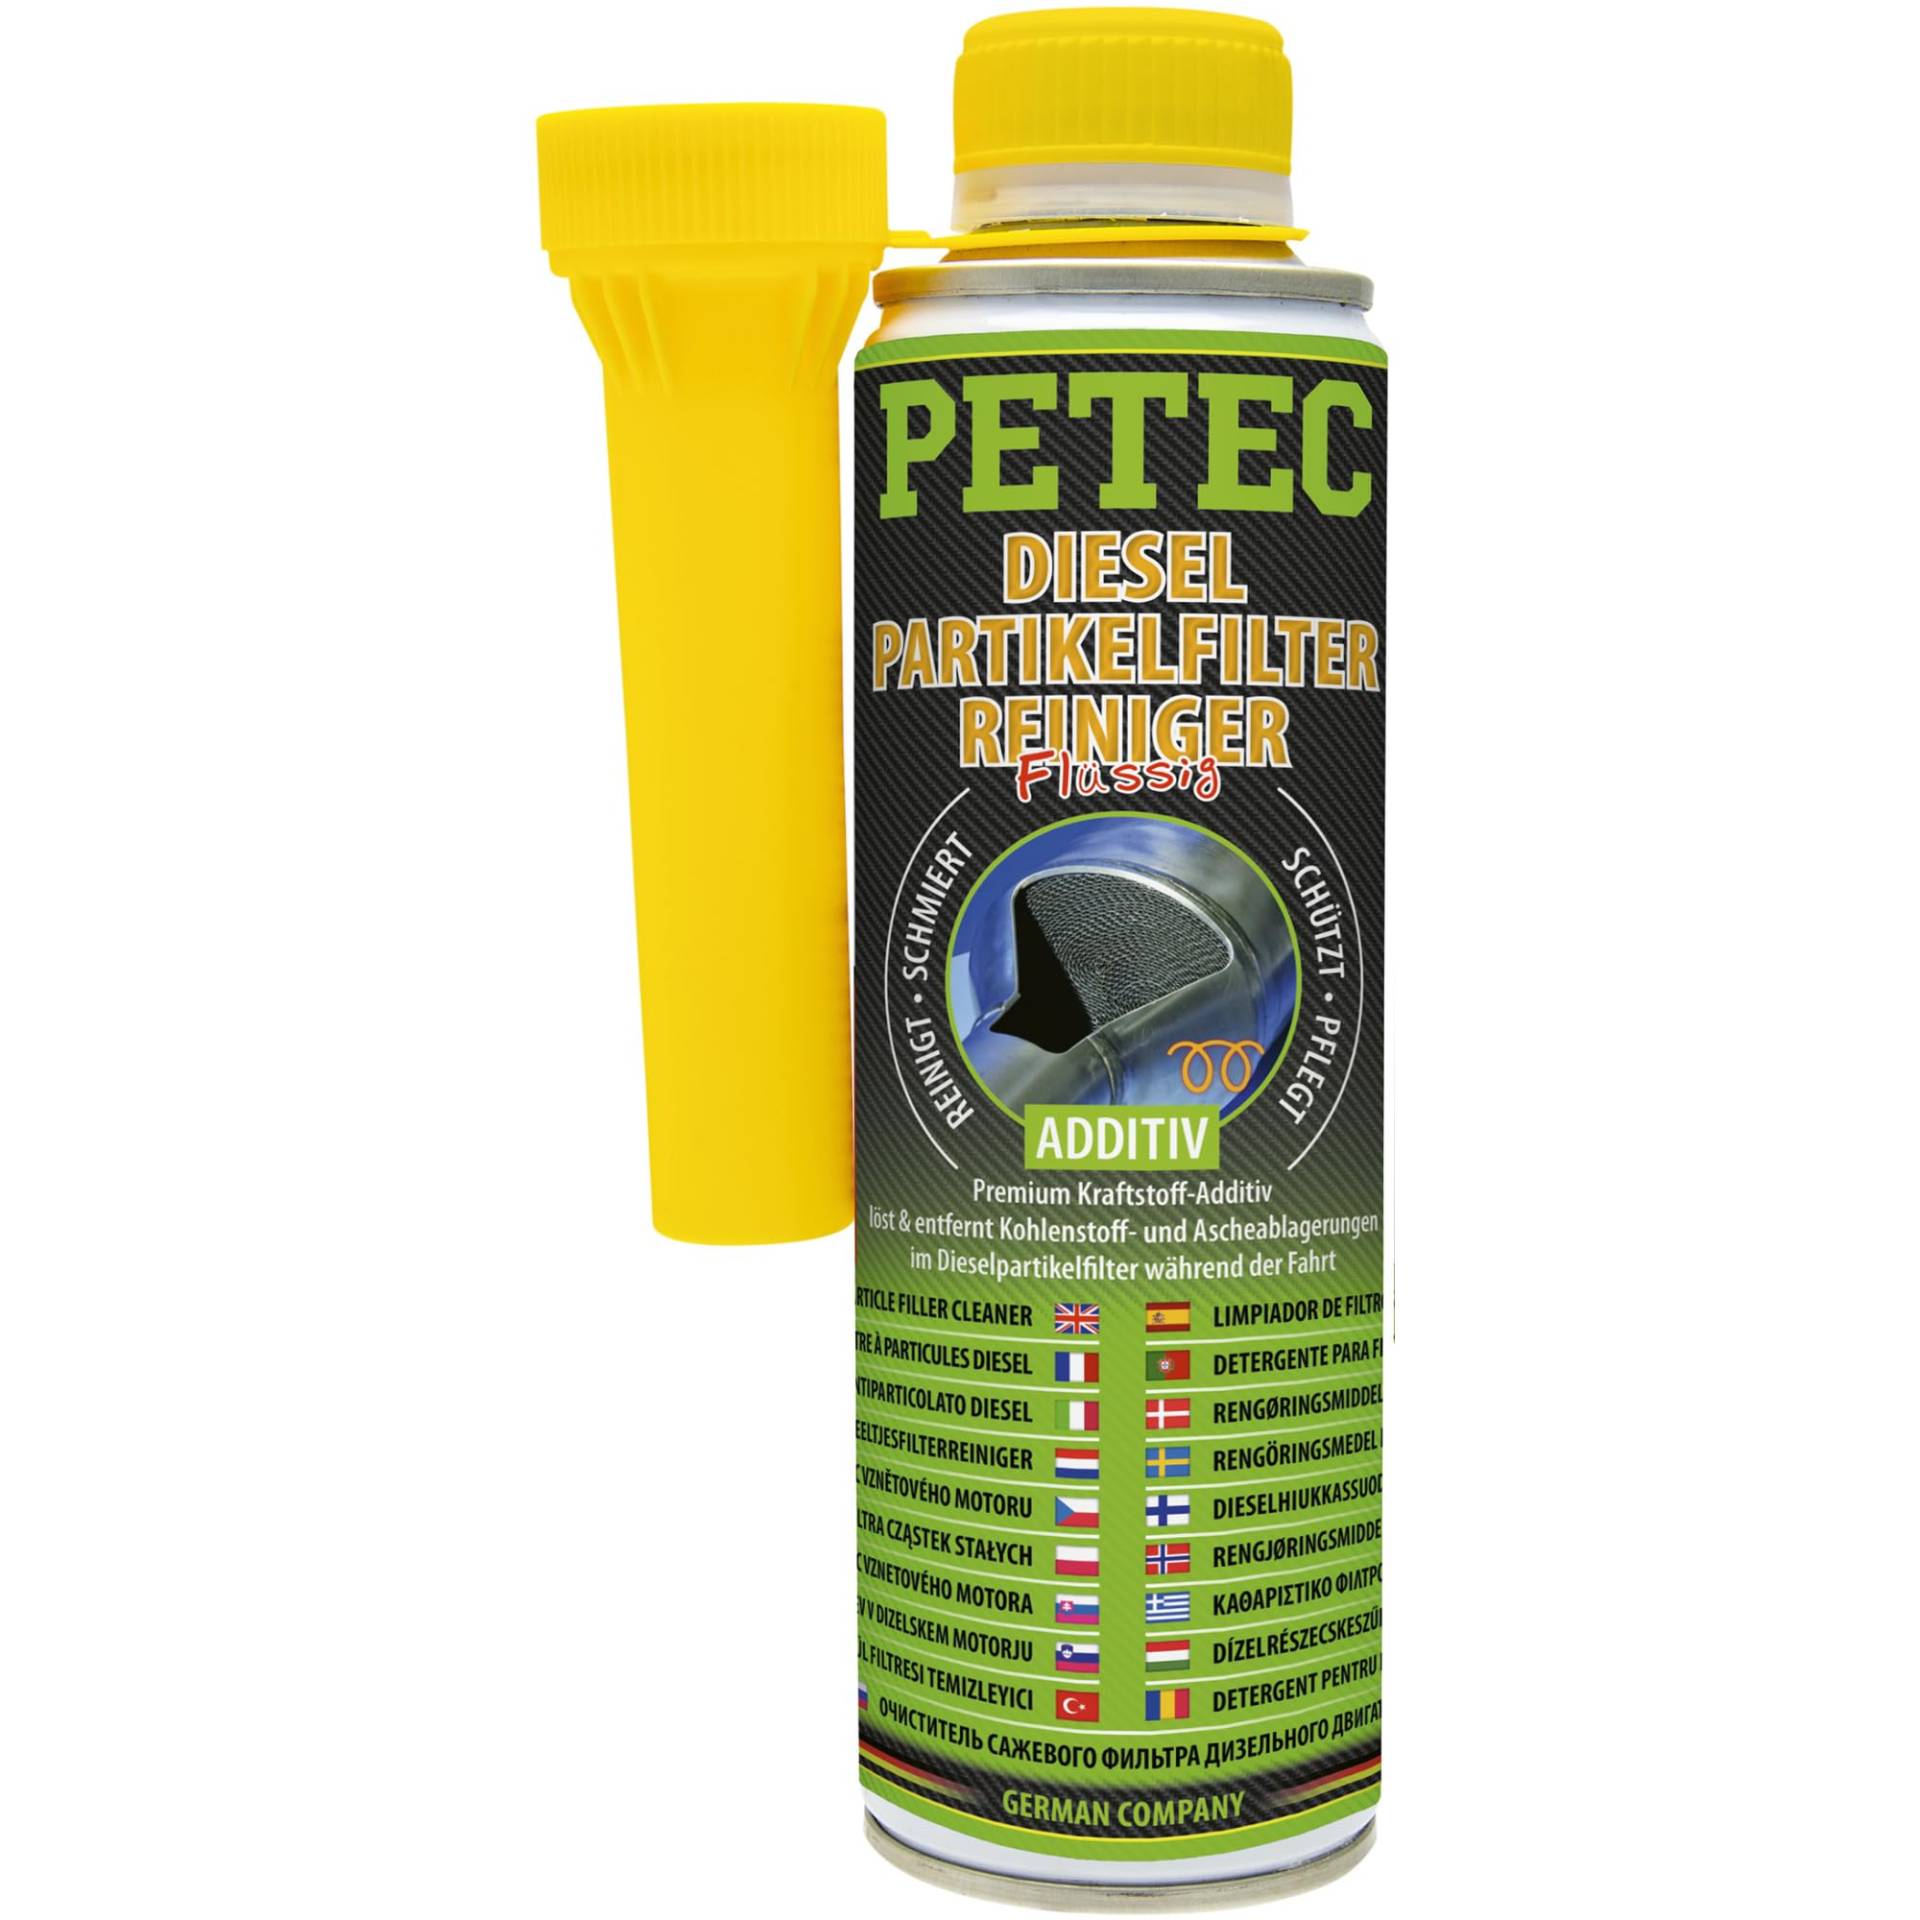 Petec Dieselpartikelfilter-Reiniger zum kontinuierlichen Reinigen des Dieselpartikelfilters von Dieselmotoren während der Fahrt, 300 ml von PETEC